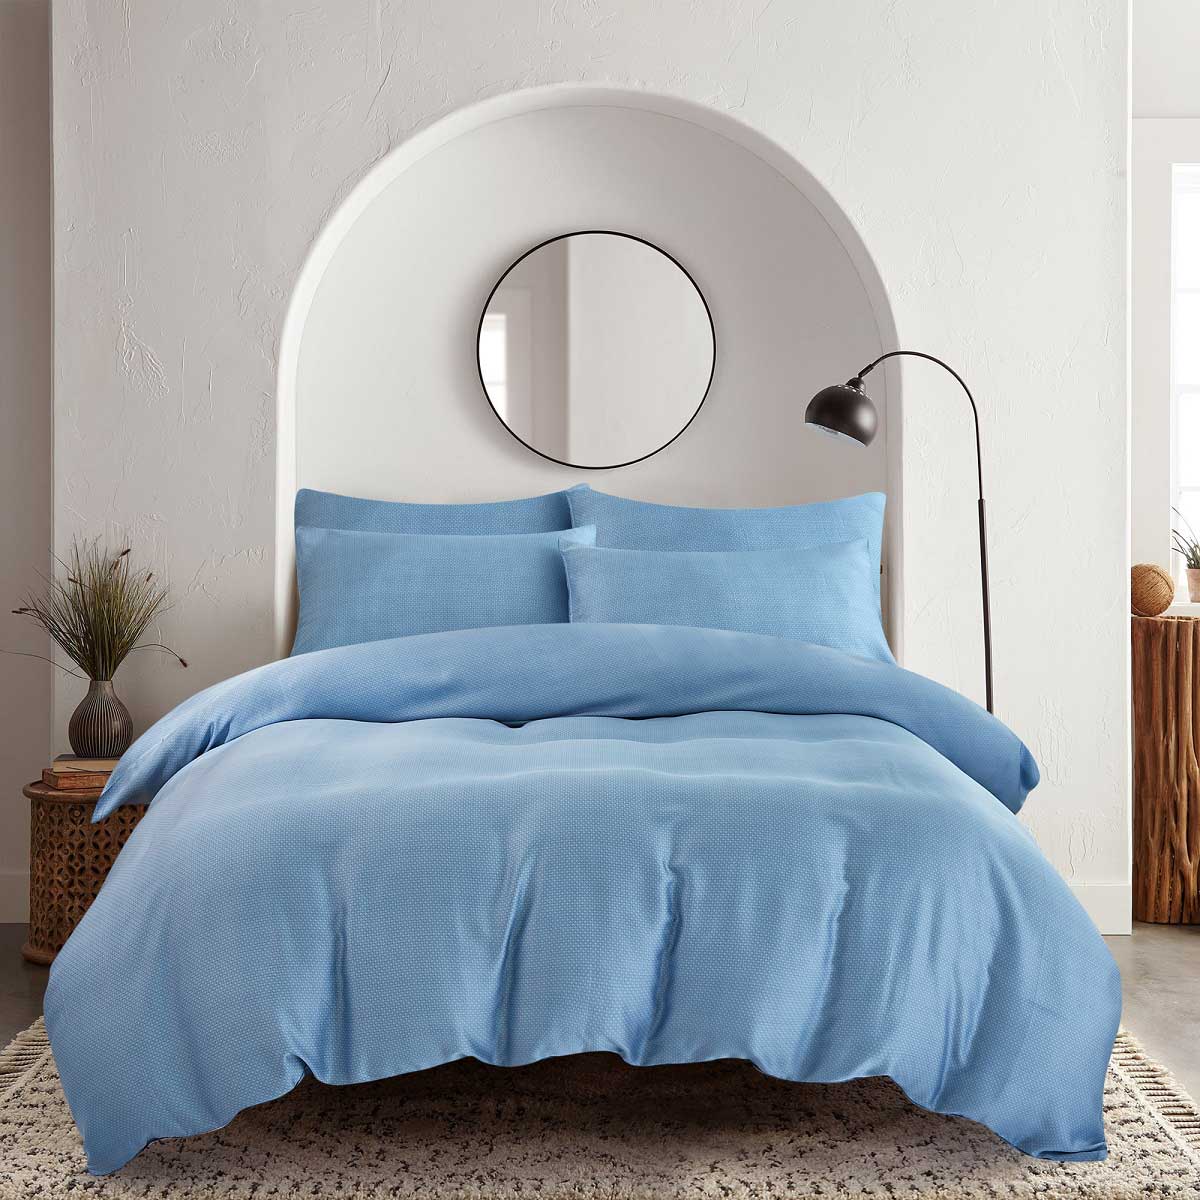 Комплект постельного белья семейный Pappel smooth blue комплект постельного белья семейный pappel leaves on blue